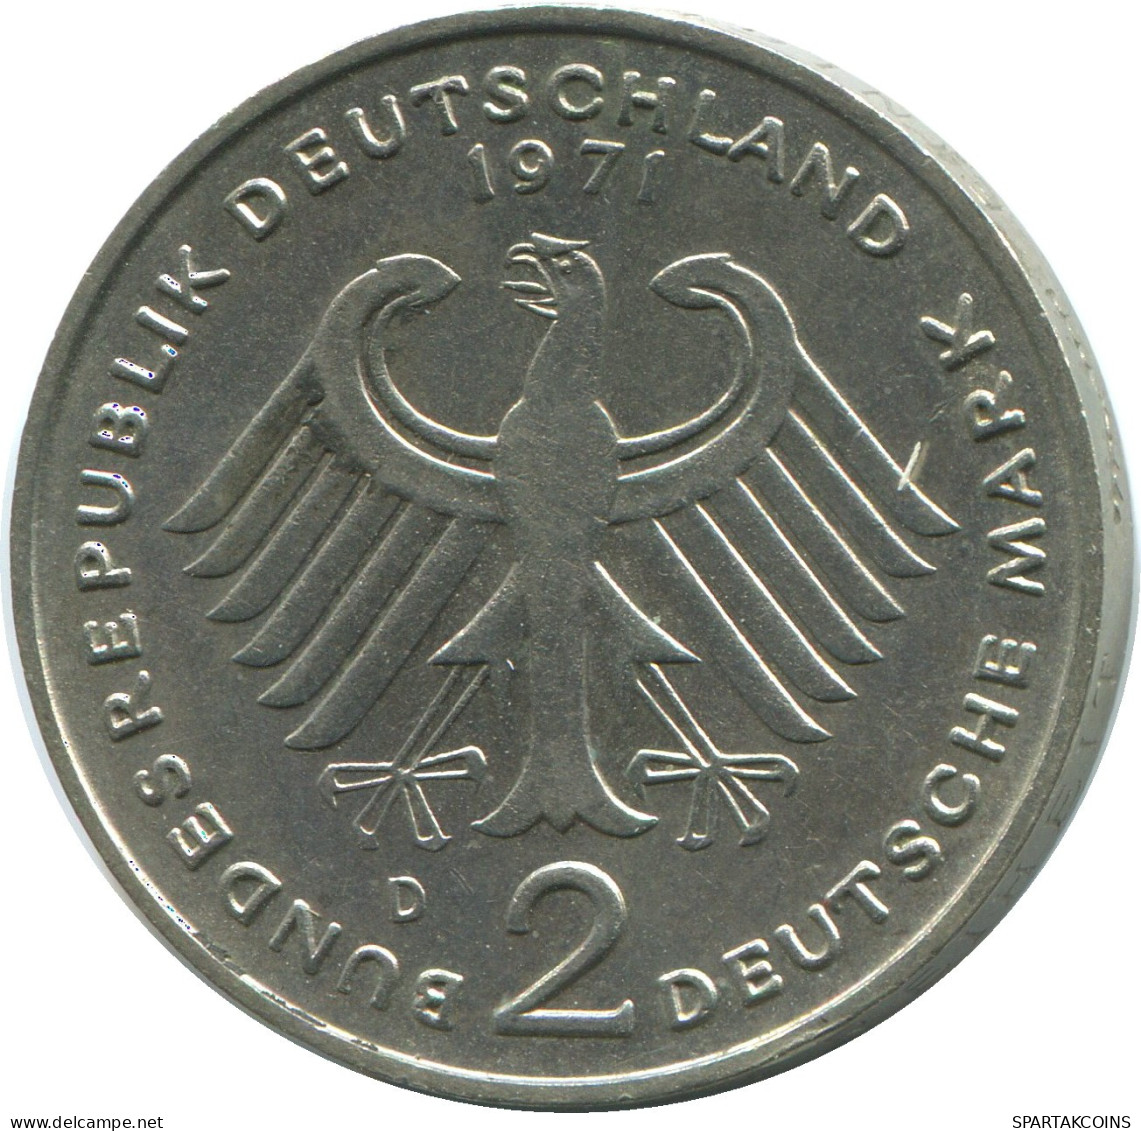 2 DM 1971 D WEST & UNIFIED GERMANY Coin #DE10370.5.U.A - 2 Mark